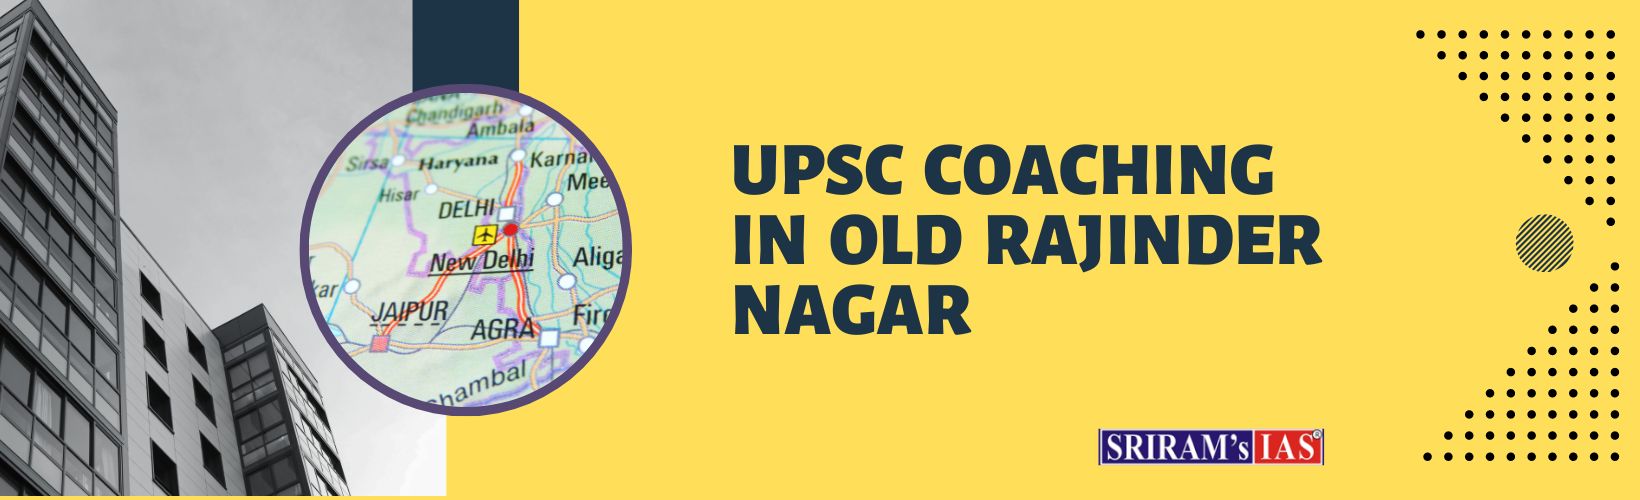 upsc coaching in old rajinder nagar